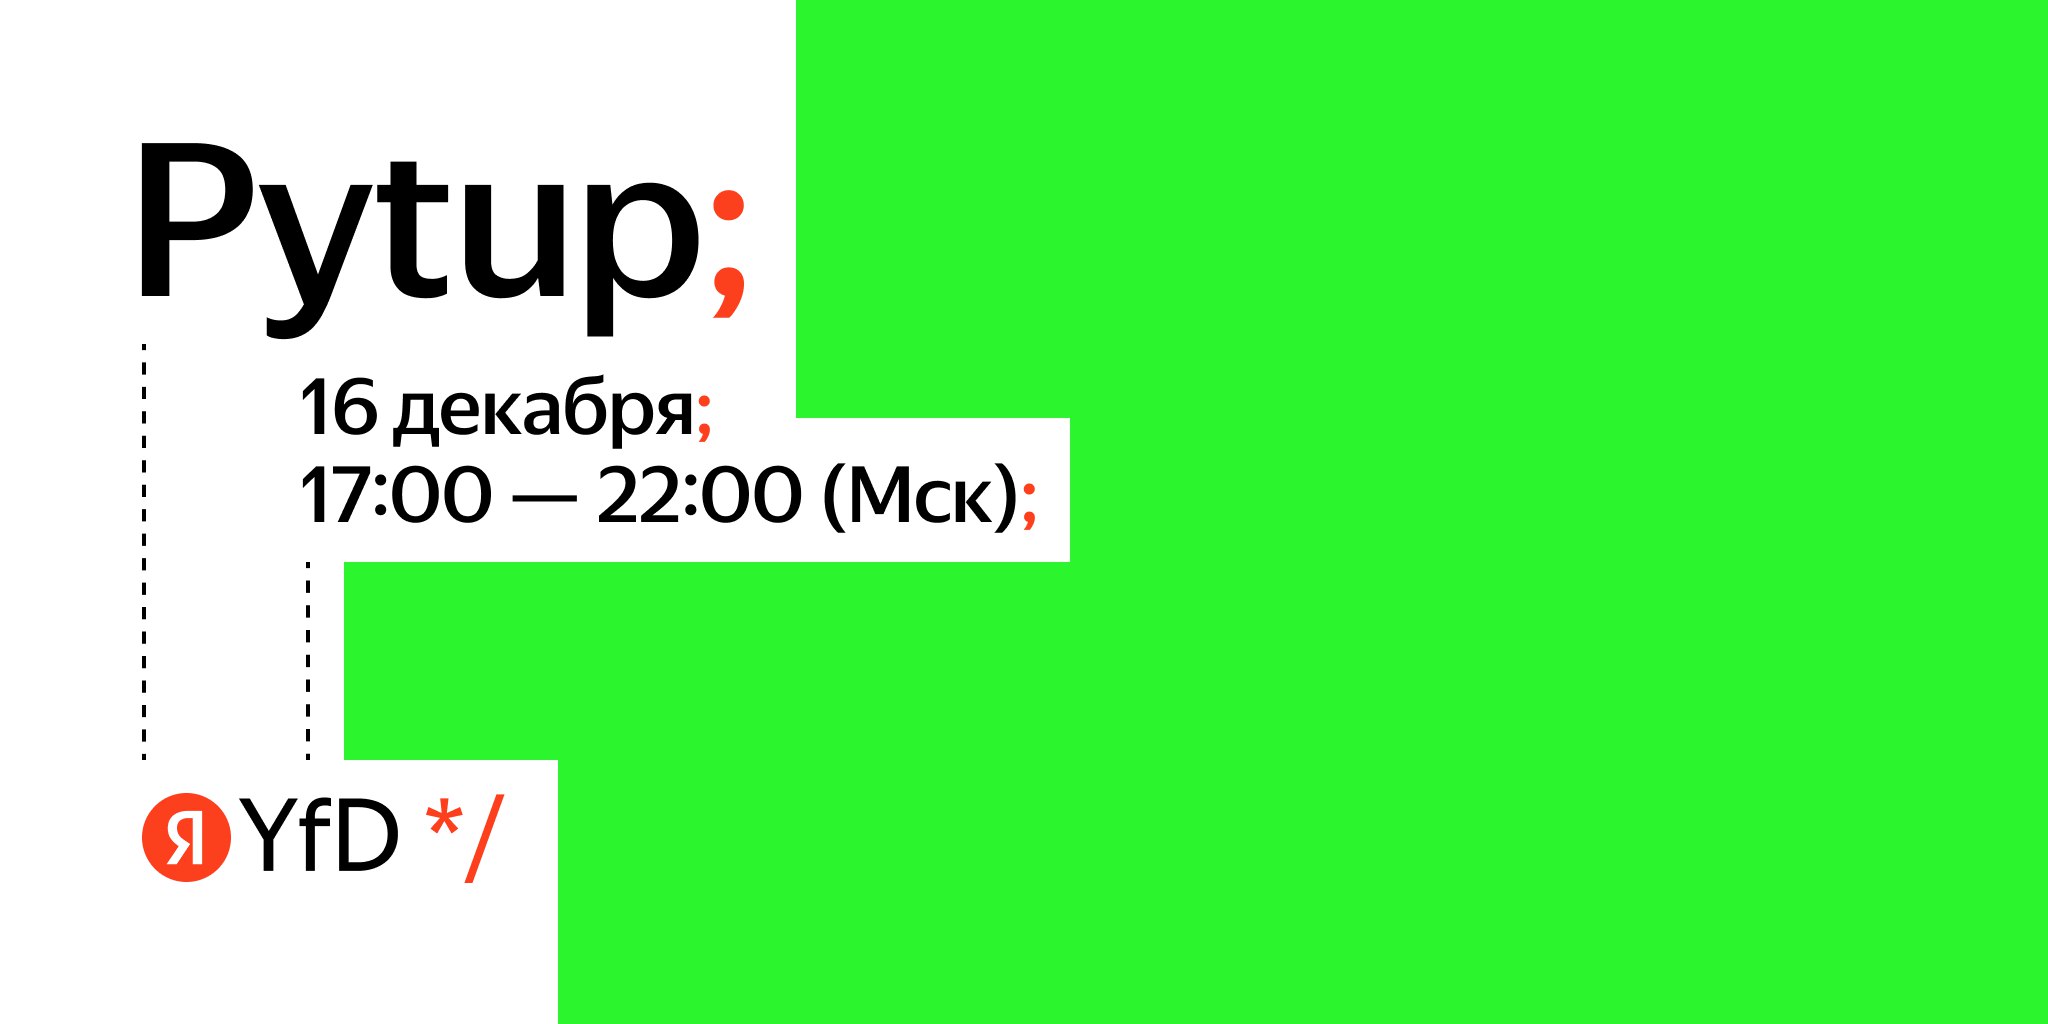 Обложка мероприятия Pytup от Яндекса